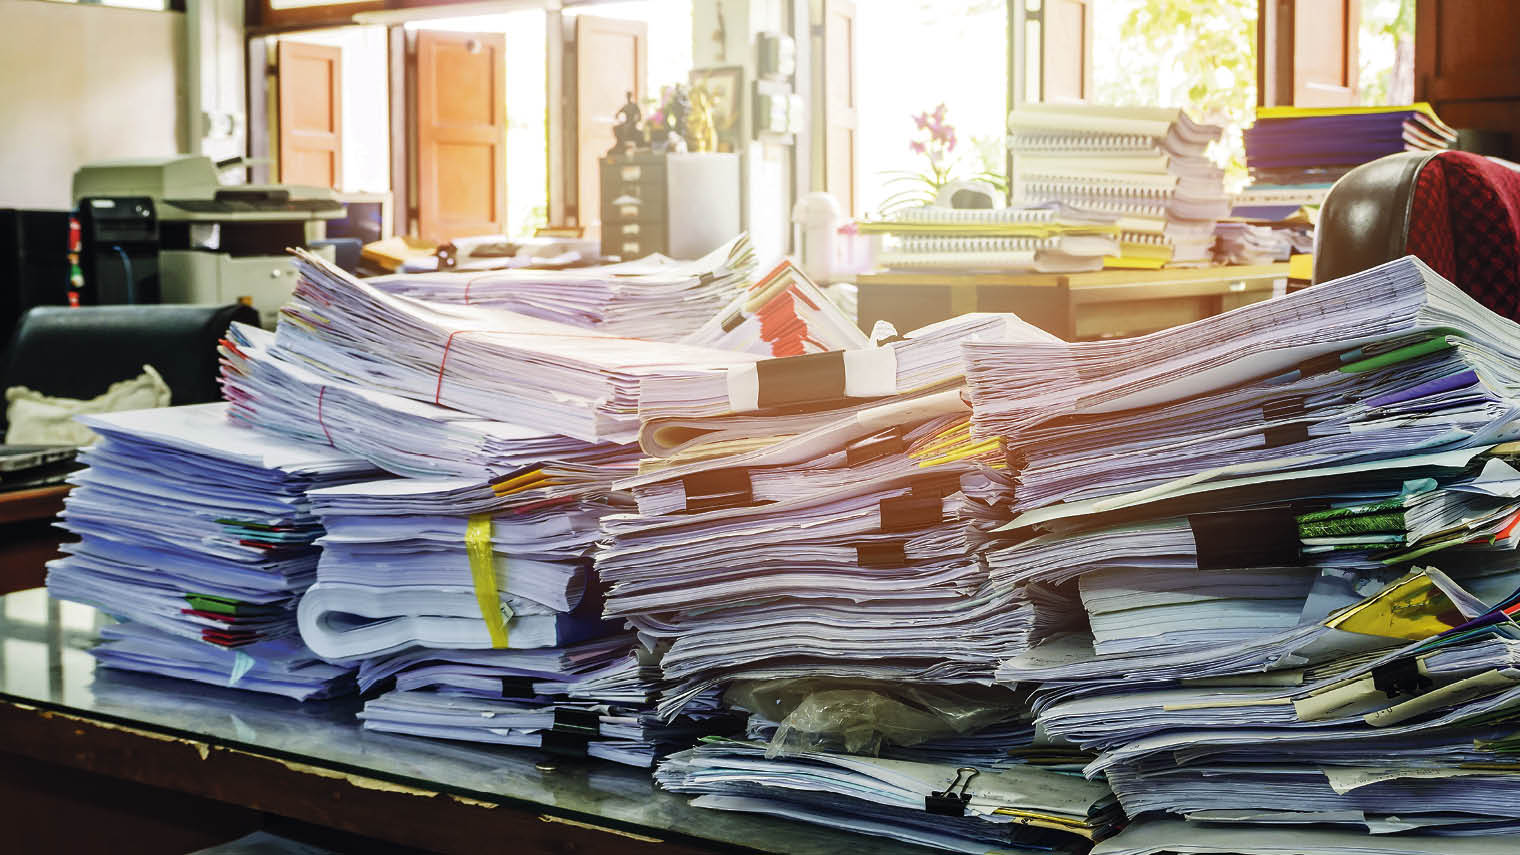 Много бумаг на столе. Стопка документов. Бумаги на столе. Много документов. Стол заваленный бумагами.